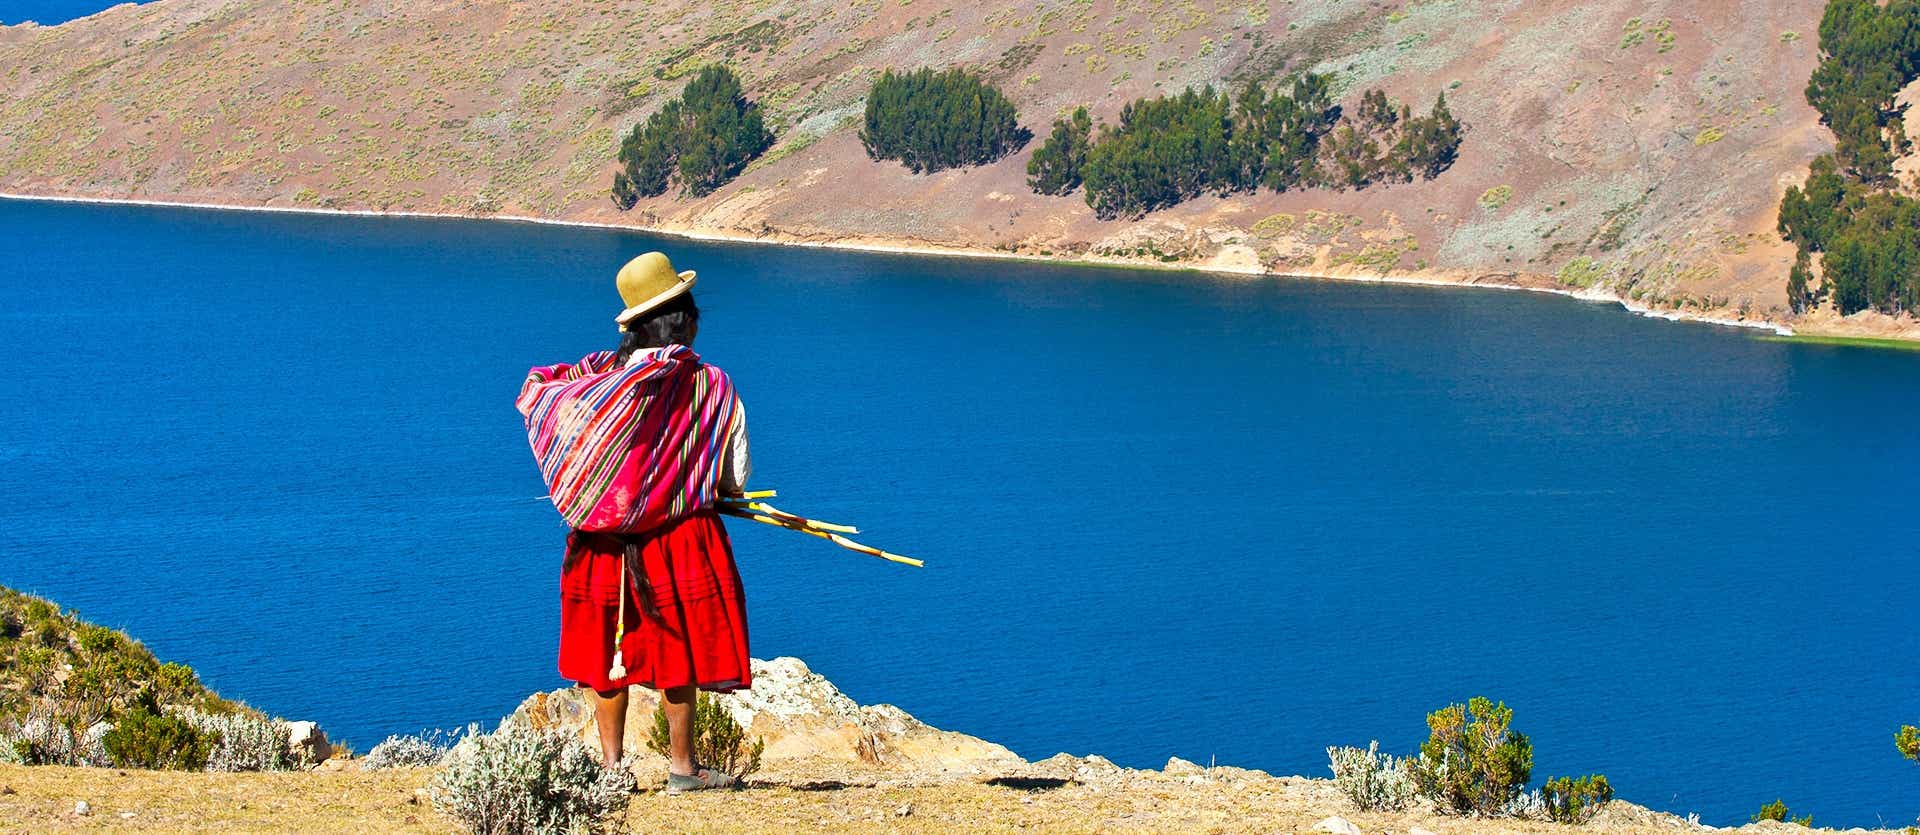 Isla del Sol <span class="iconos separador"></span> Lago Titicaca <span class="iconos separador"></span> Bolivia